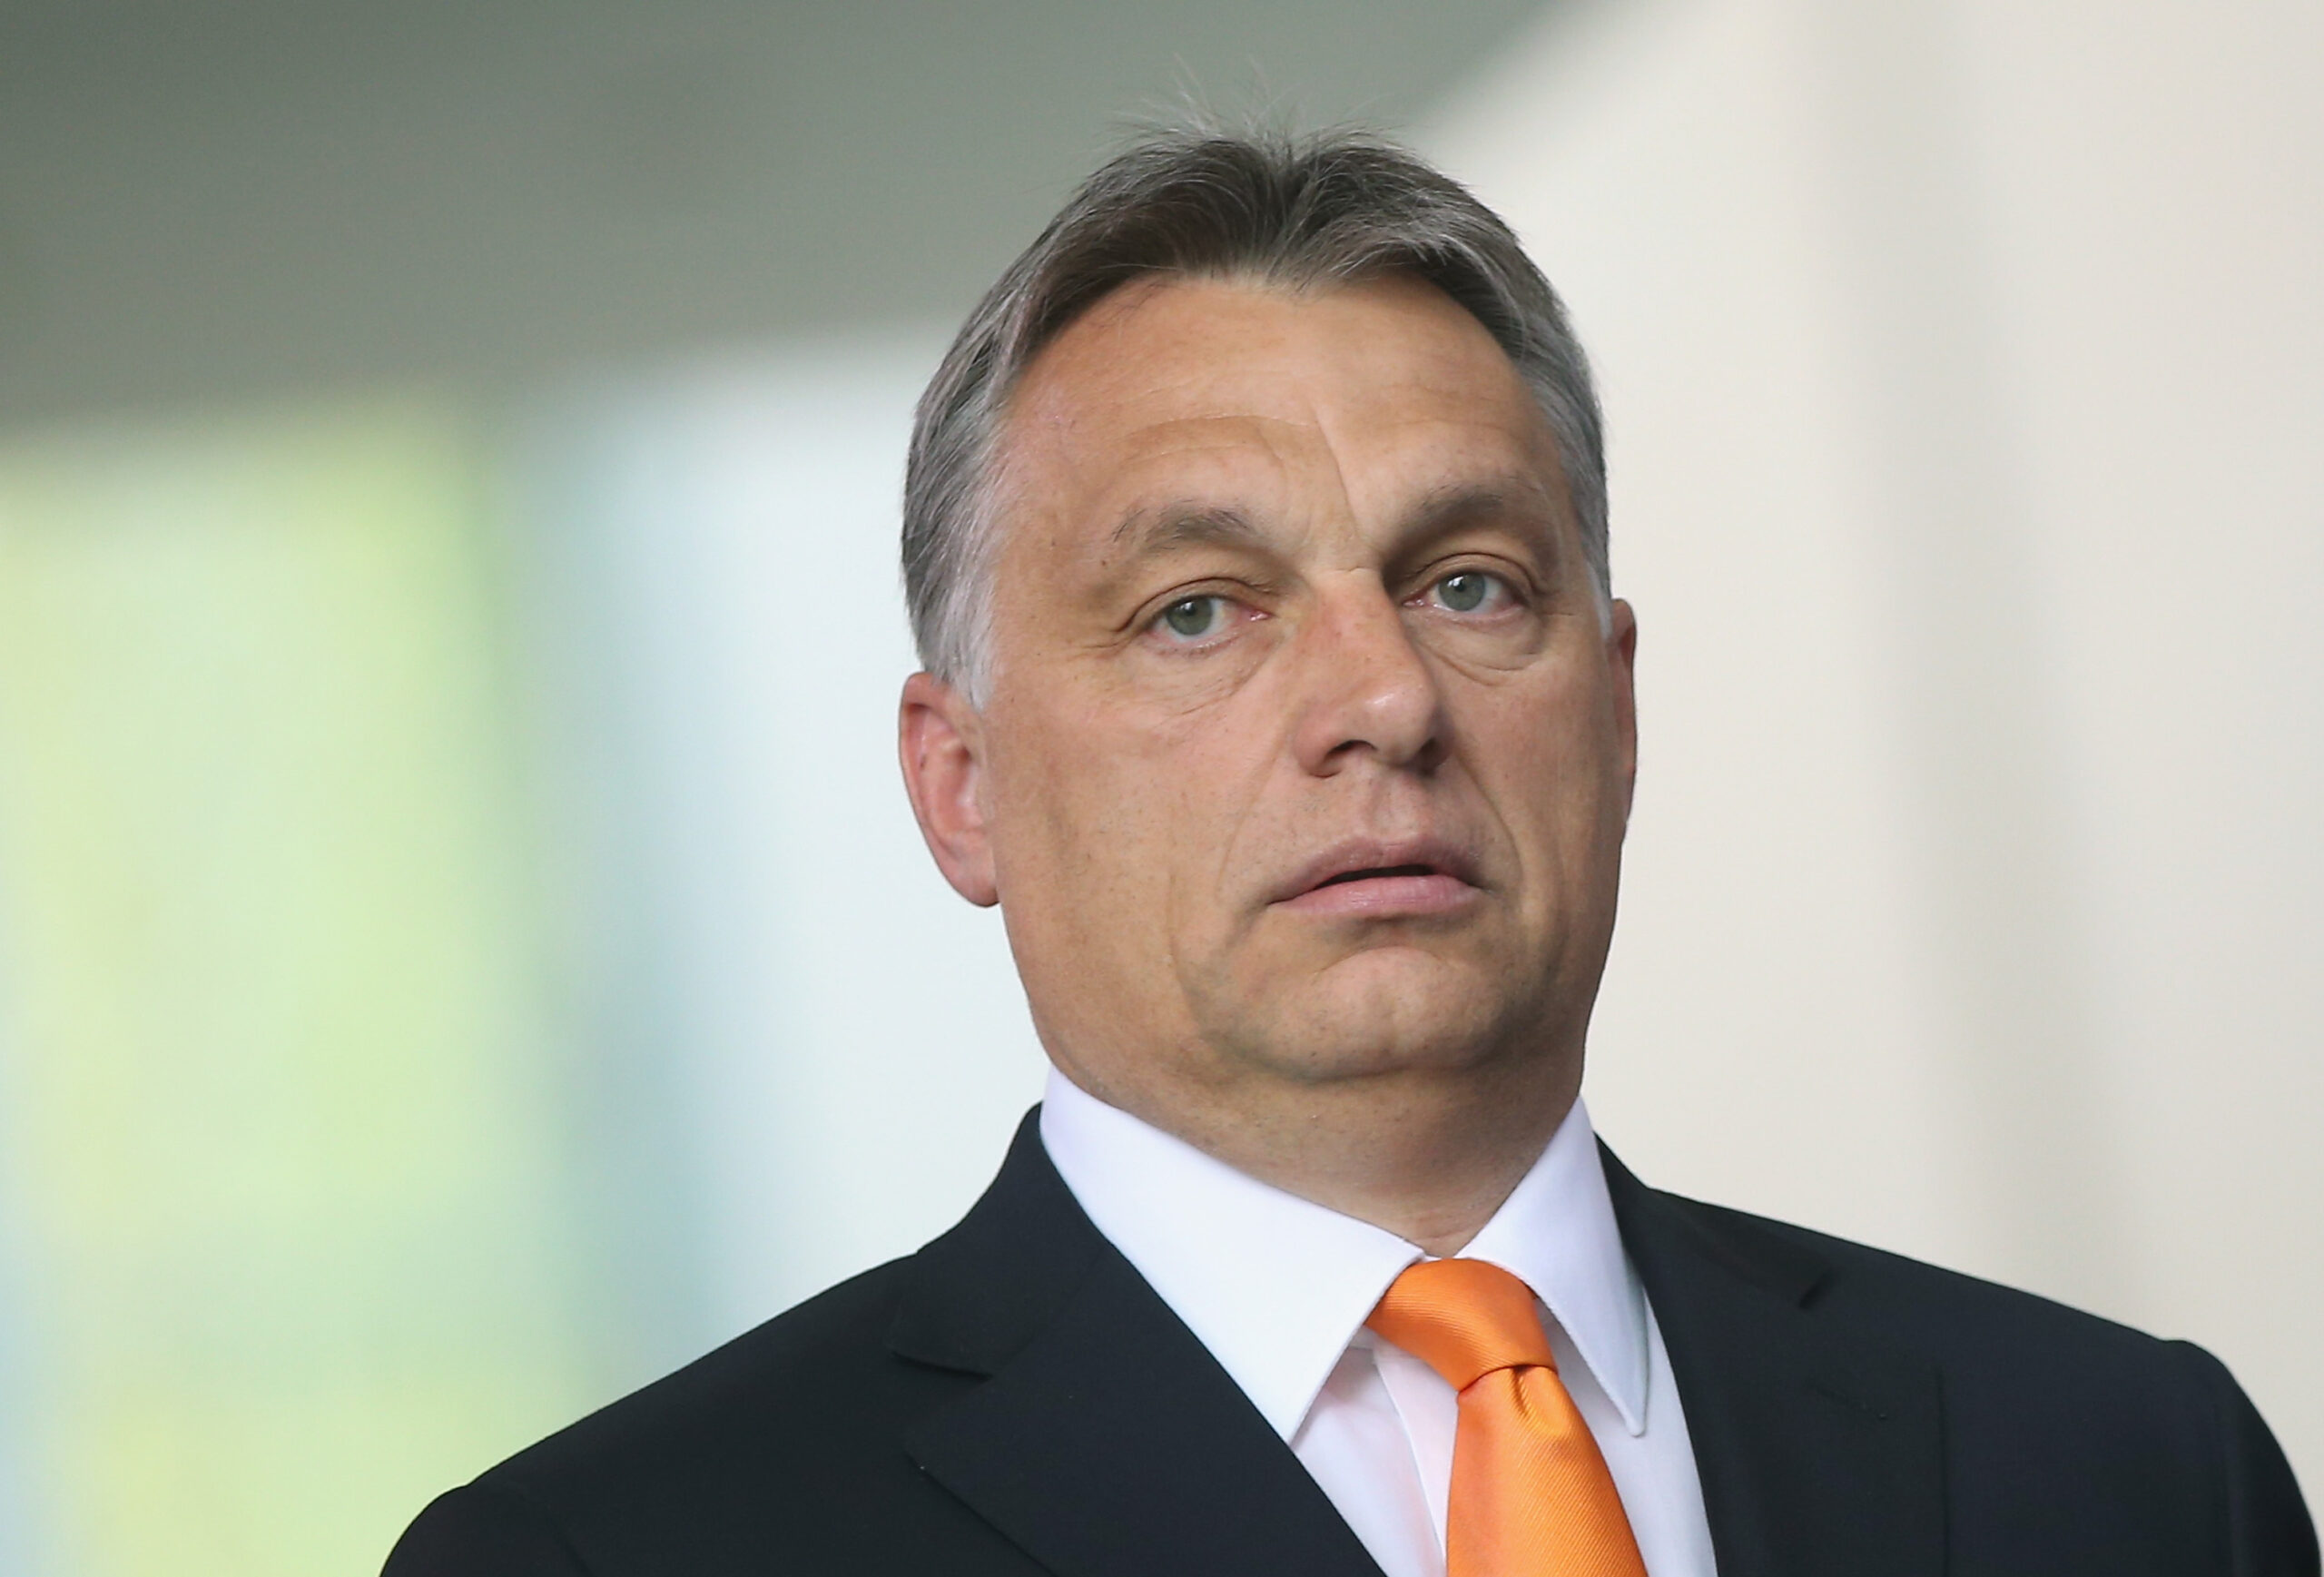 Віктор Орбан дав пояснення з приводу позиції проти продовження допомоги Україні від ЄС